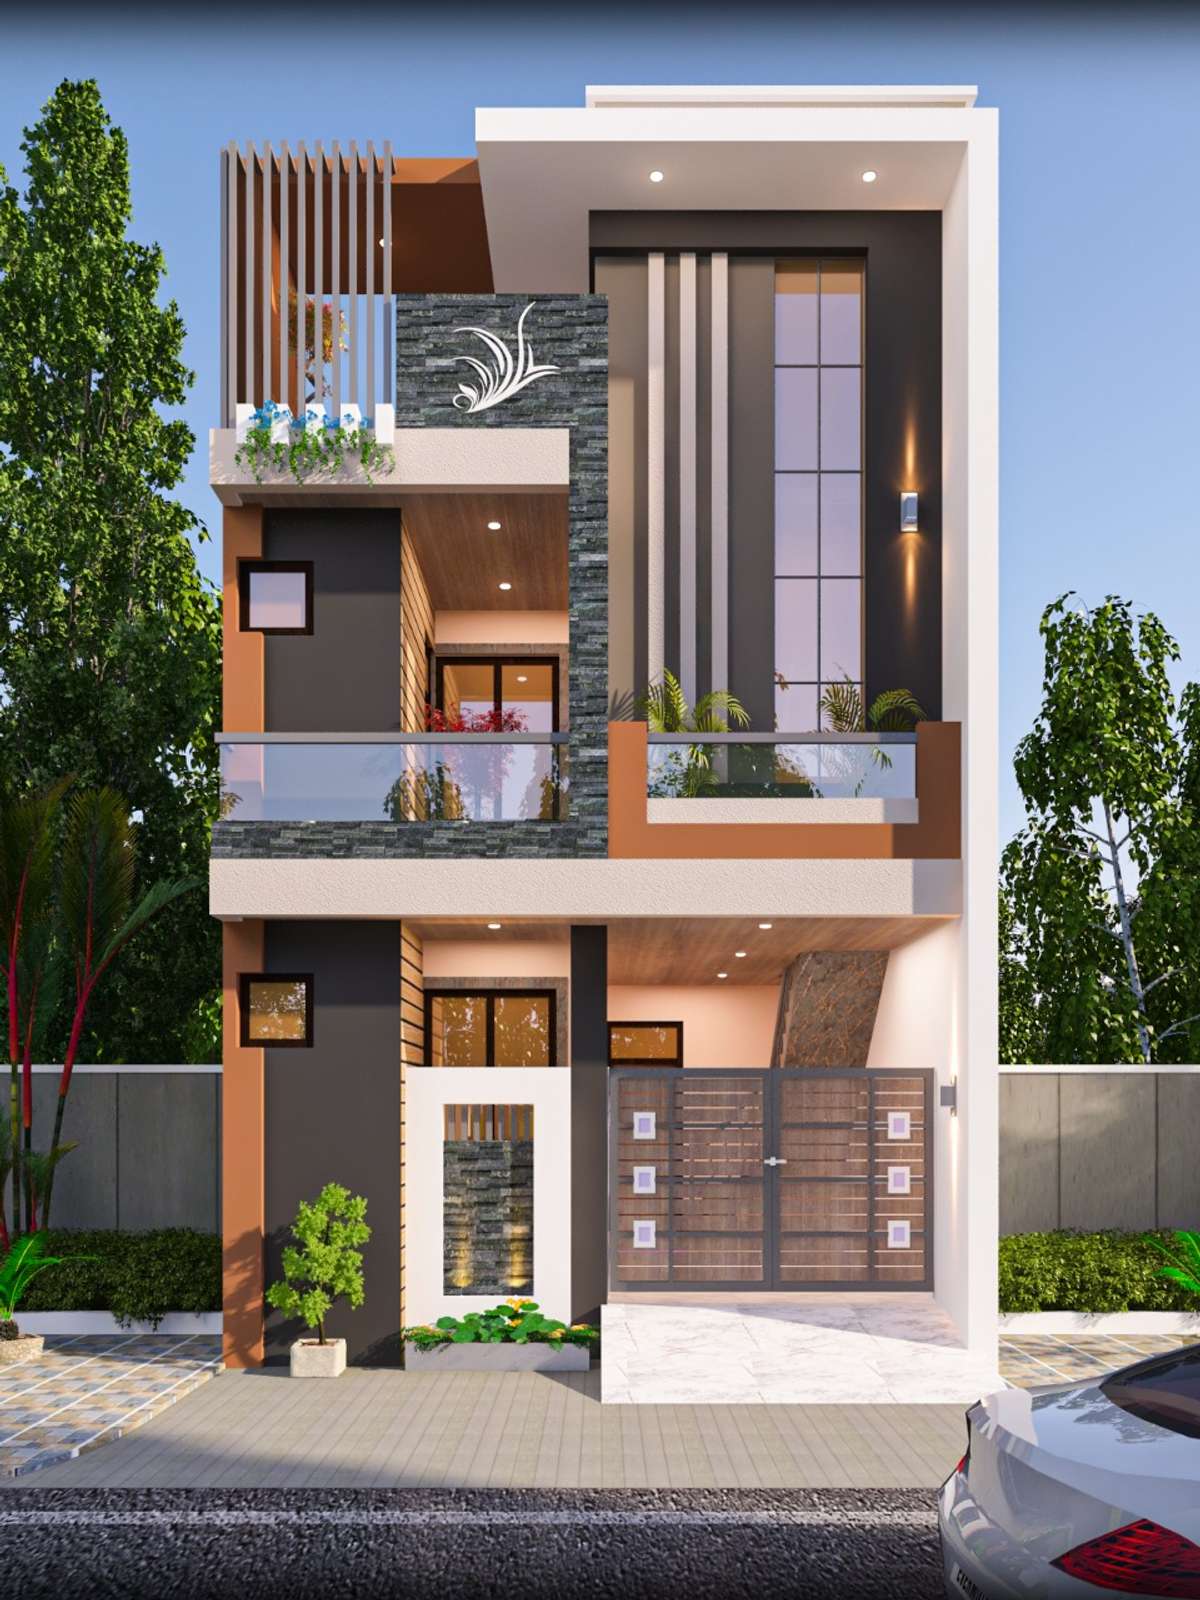 Designs by Civil Engineer Sunil Raj, Bhopal | Kolo